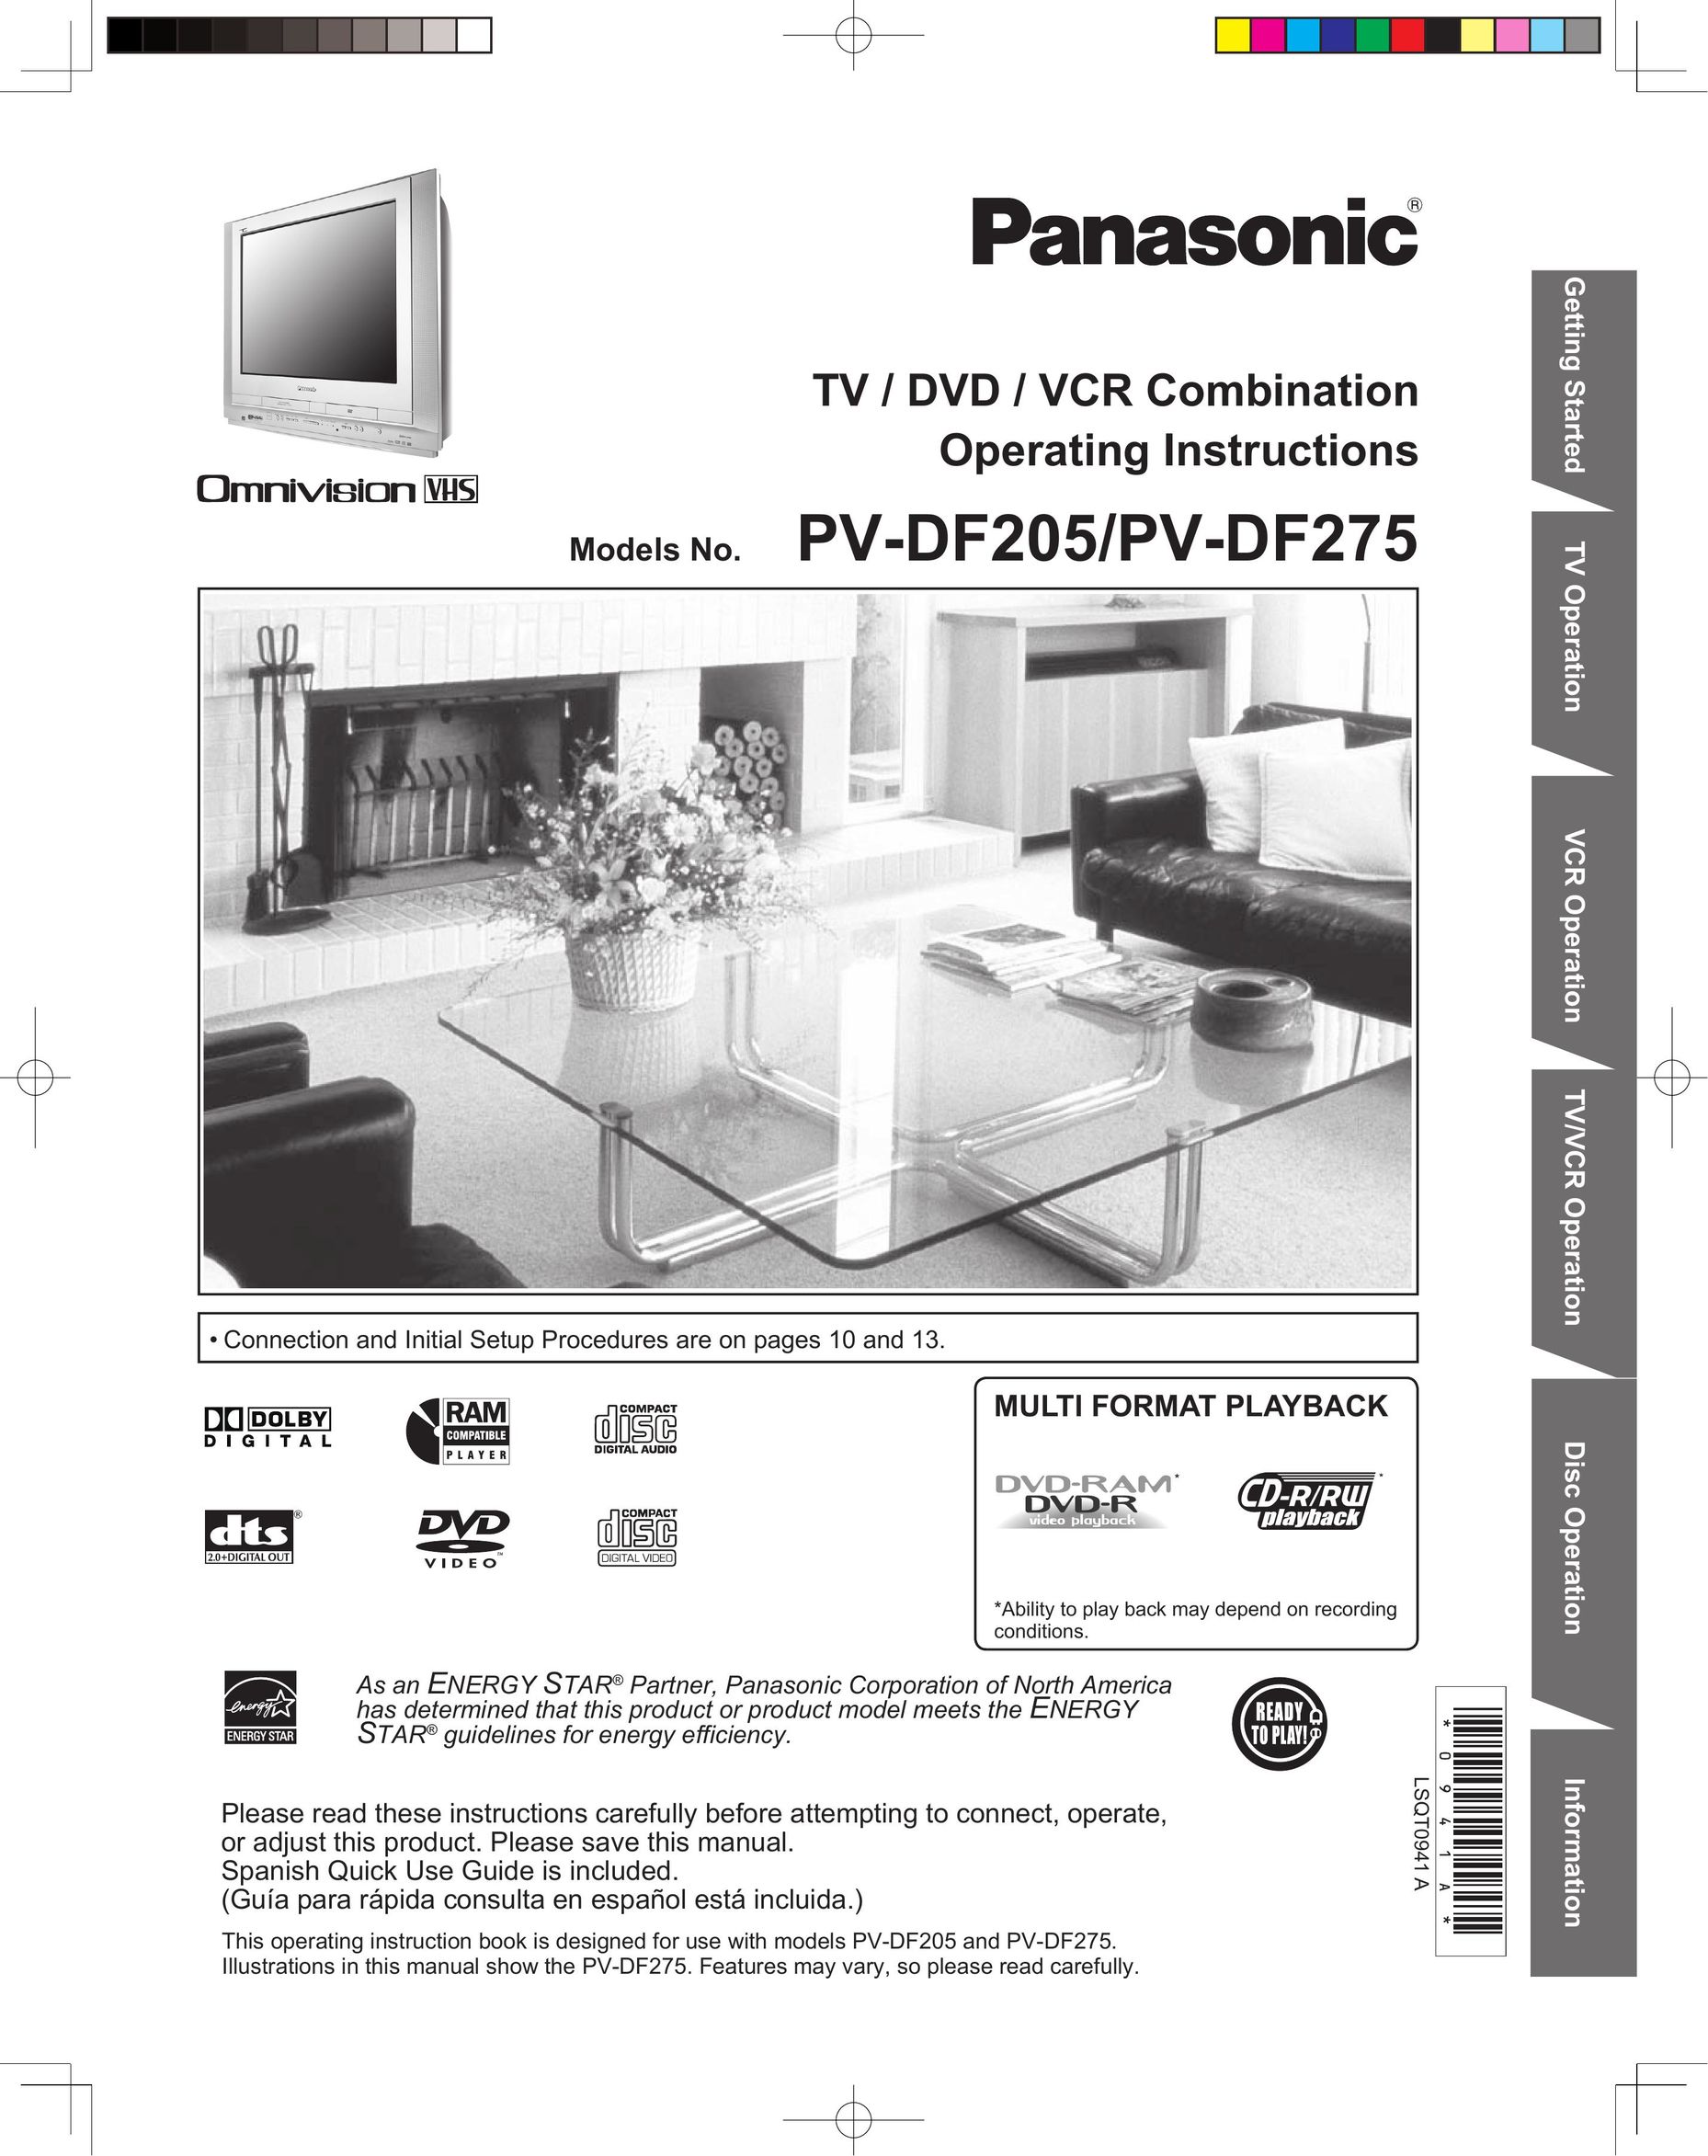 Panasonic PV-DF275 TV VCR Combo User Manual